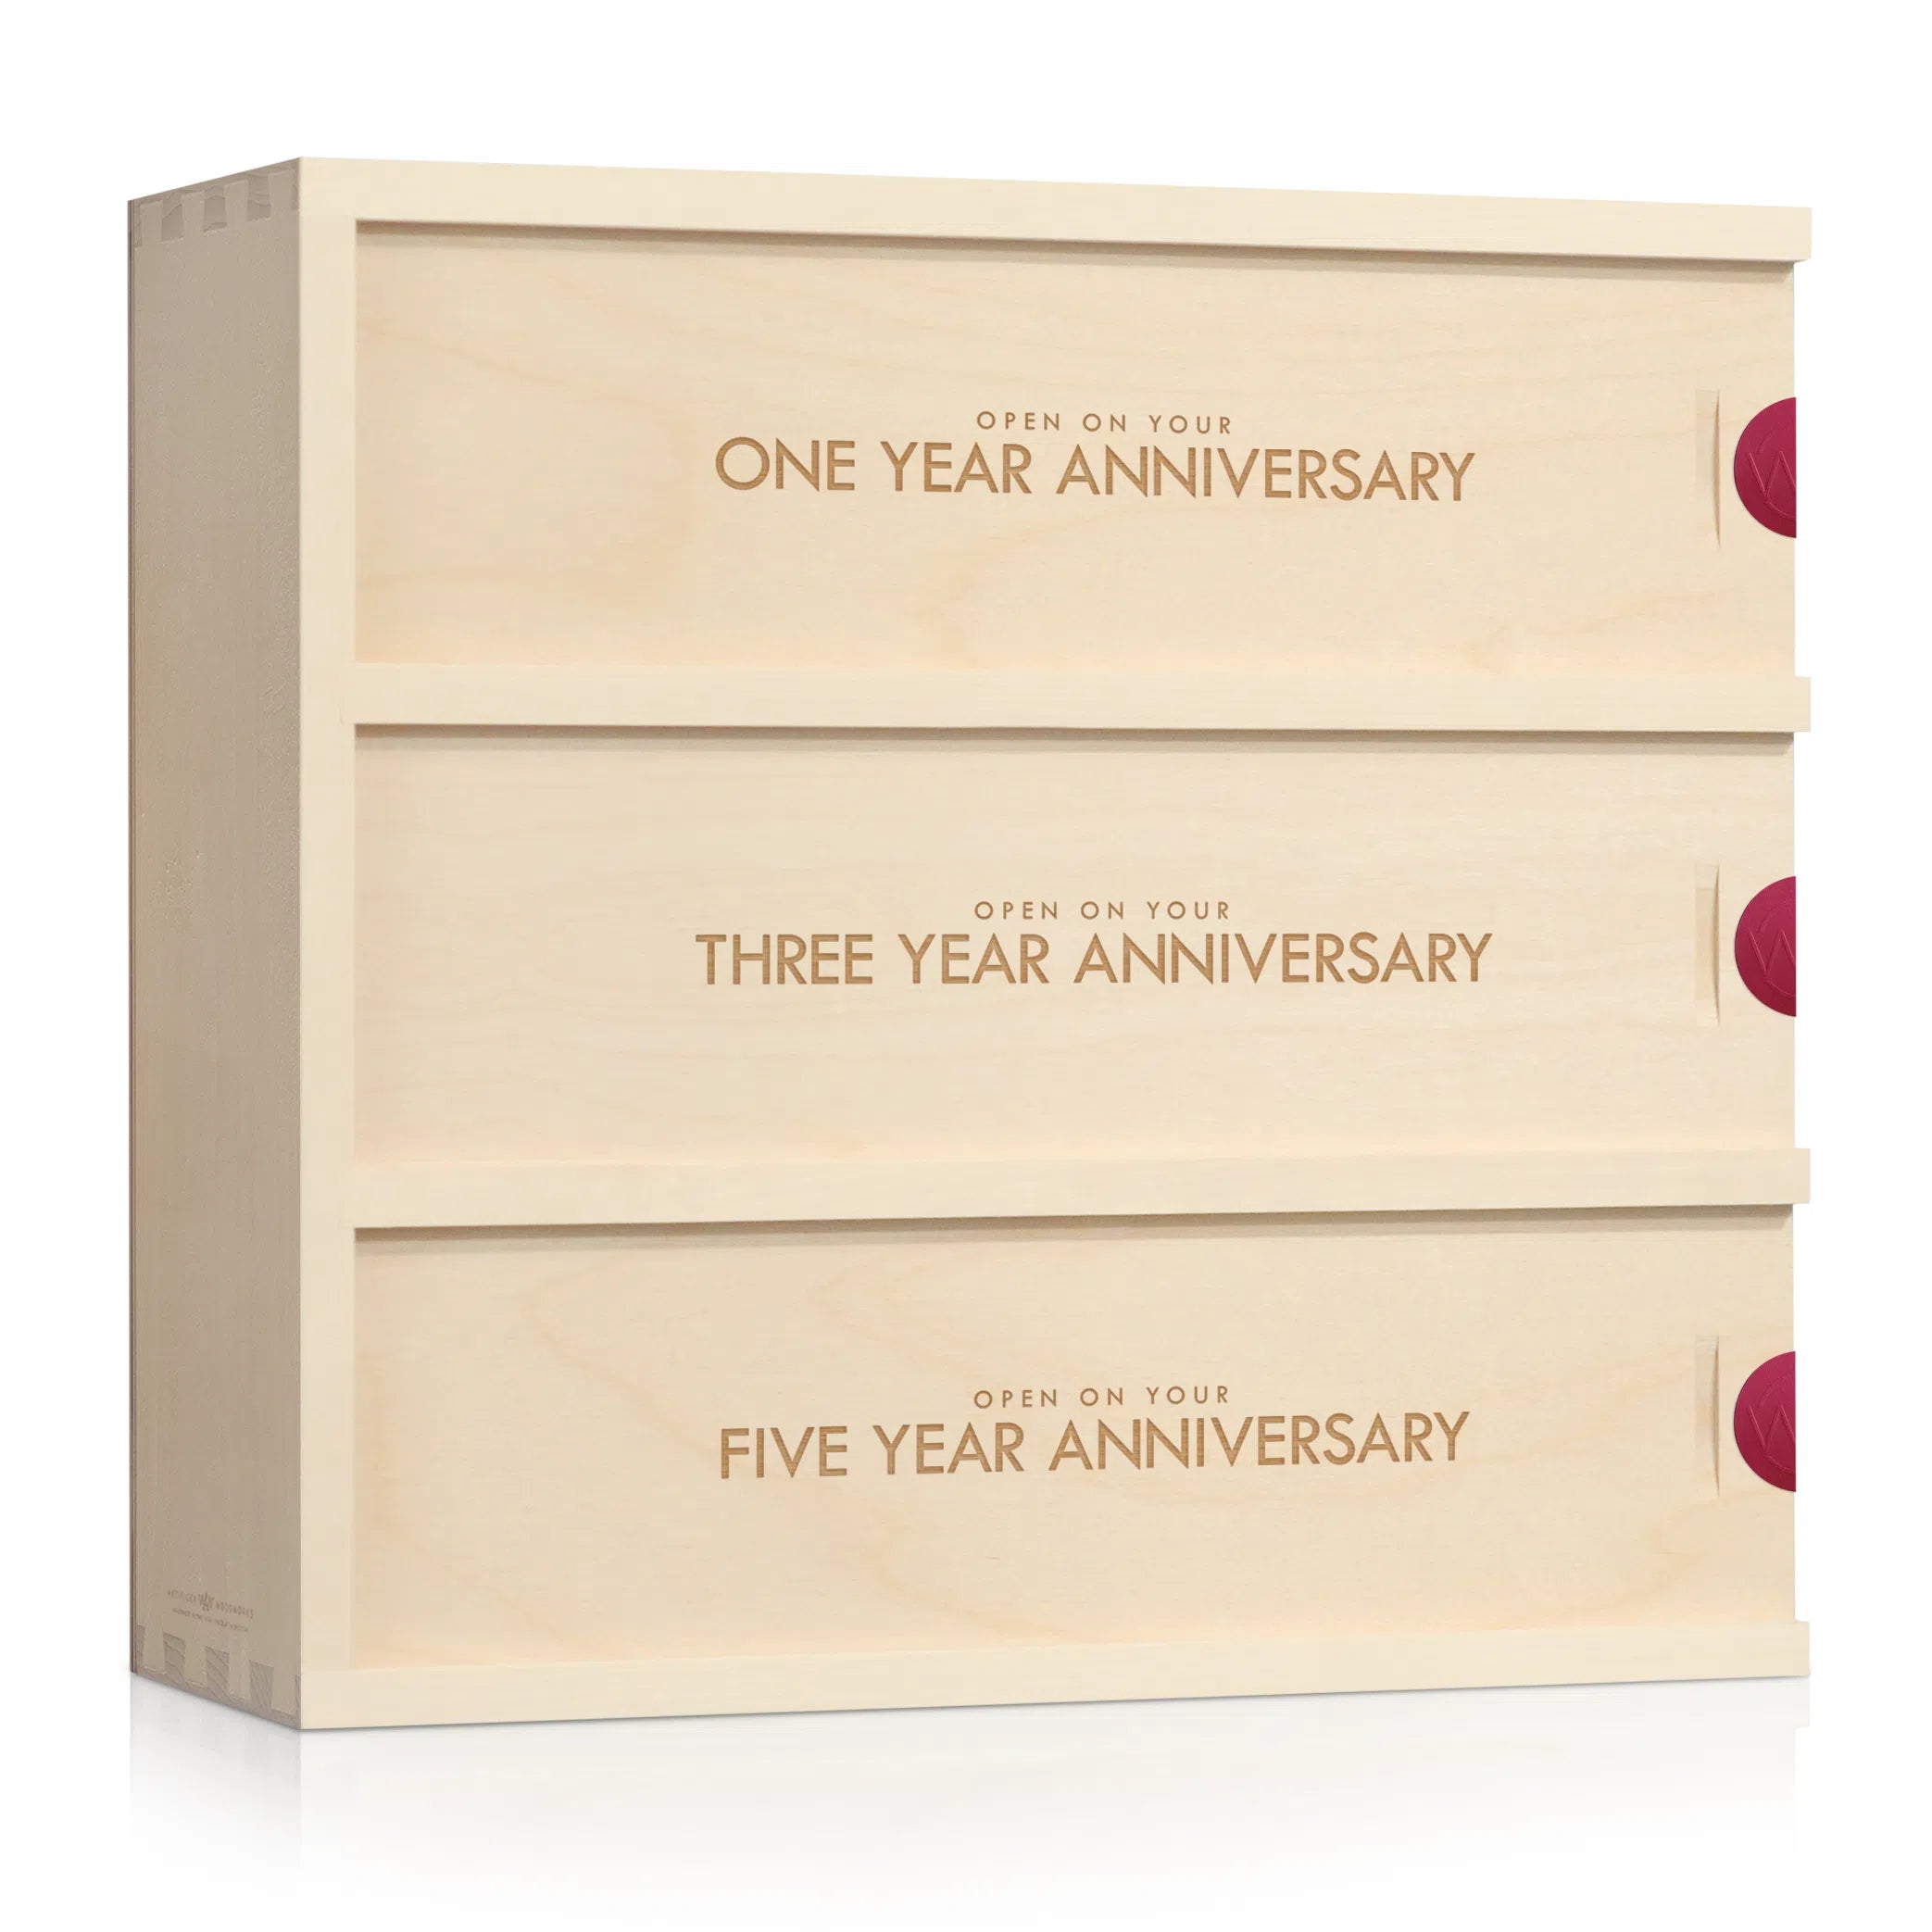 Classic Trio Anniversary Wine Box